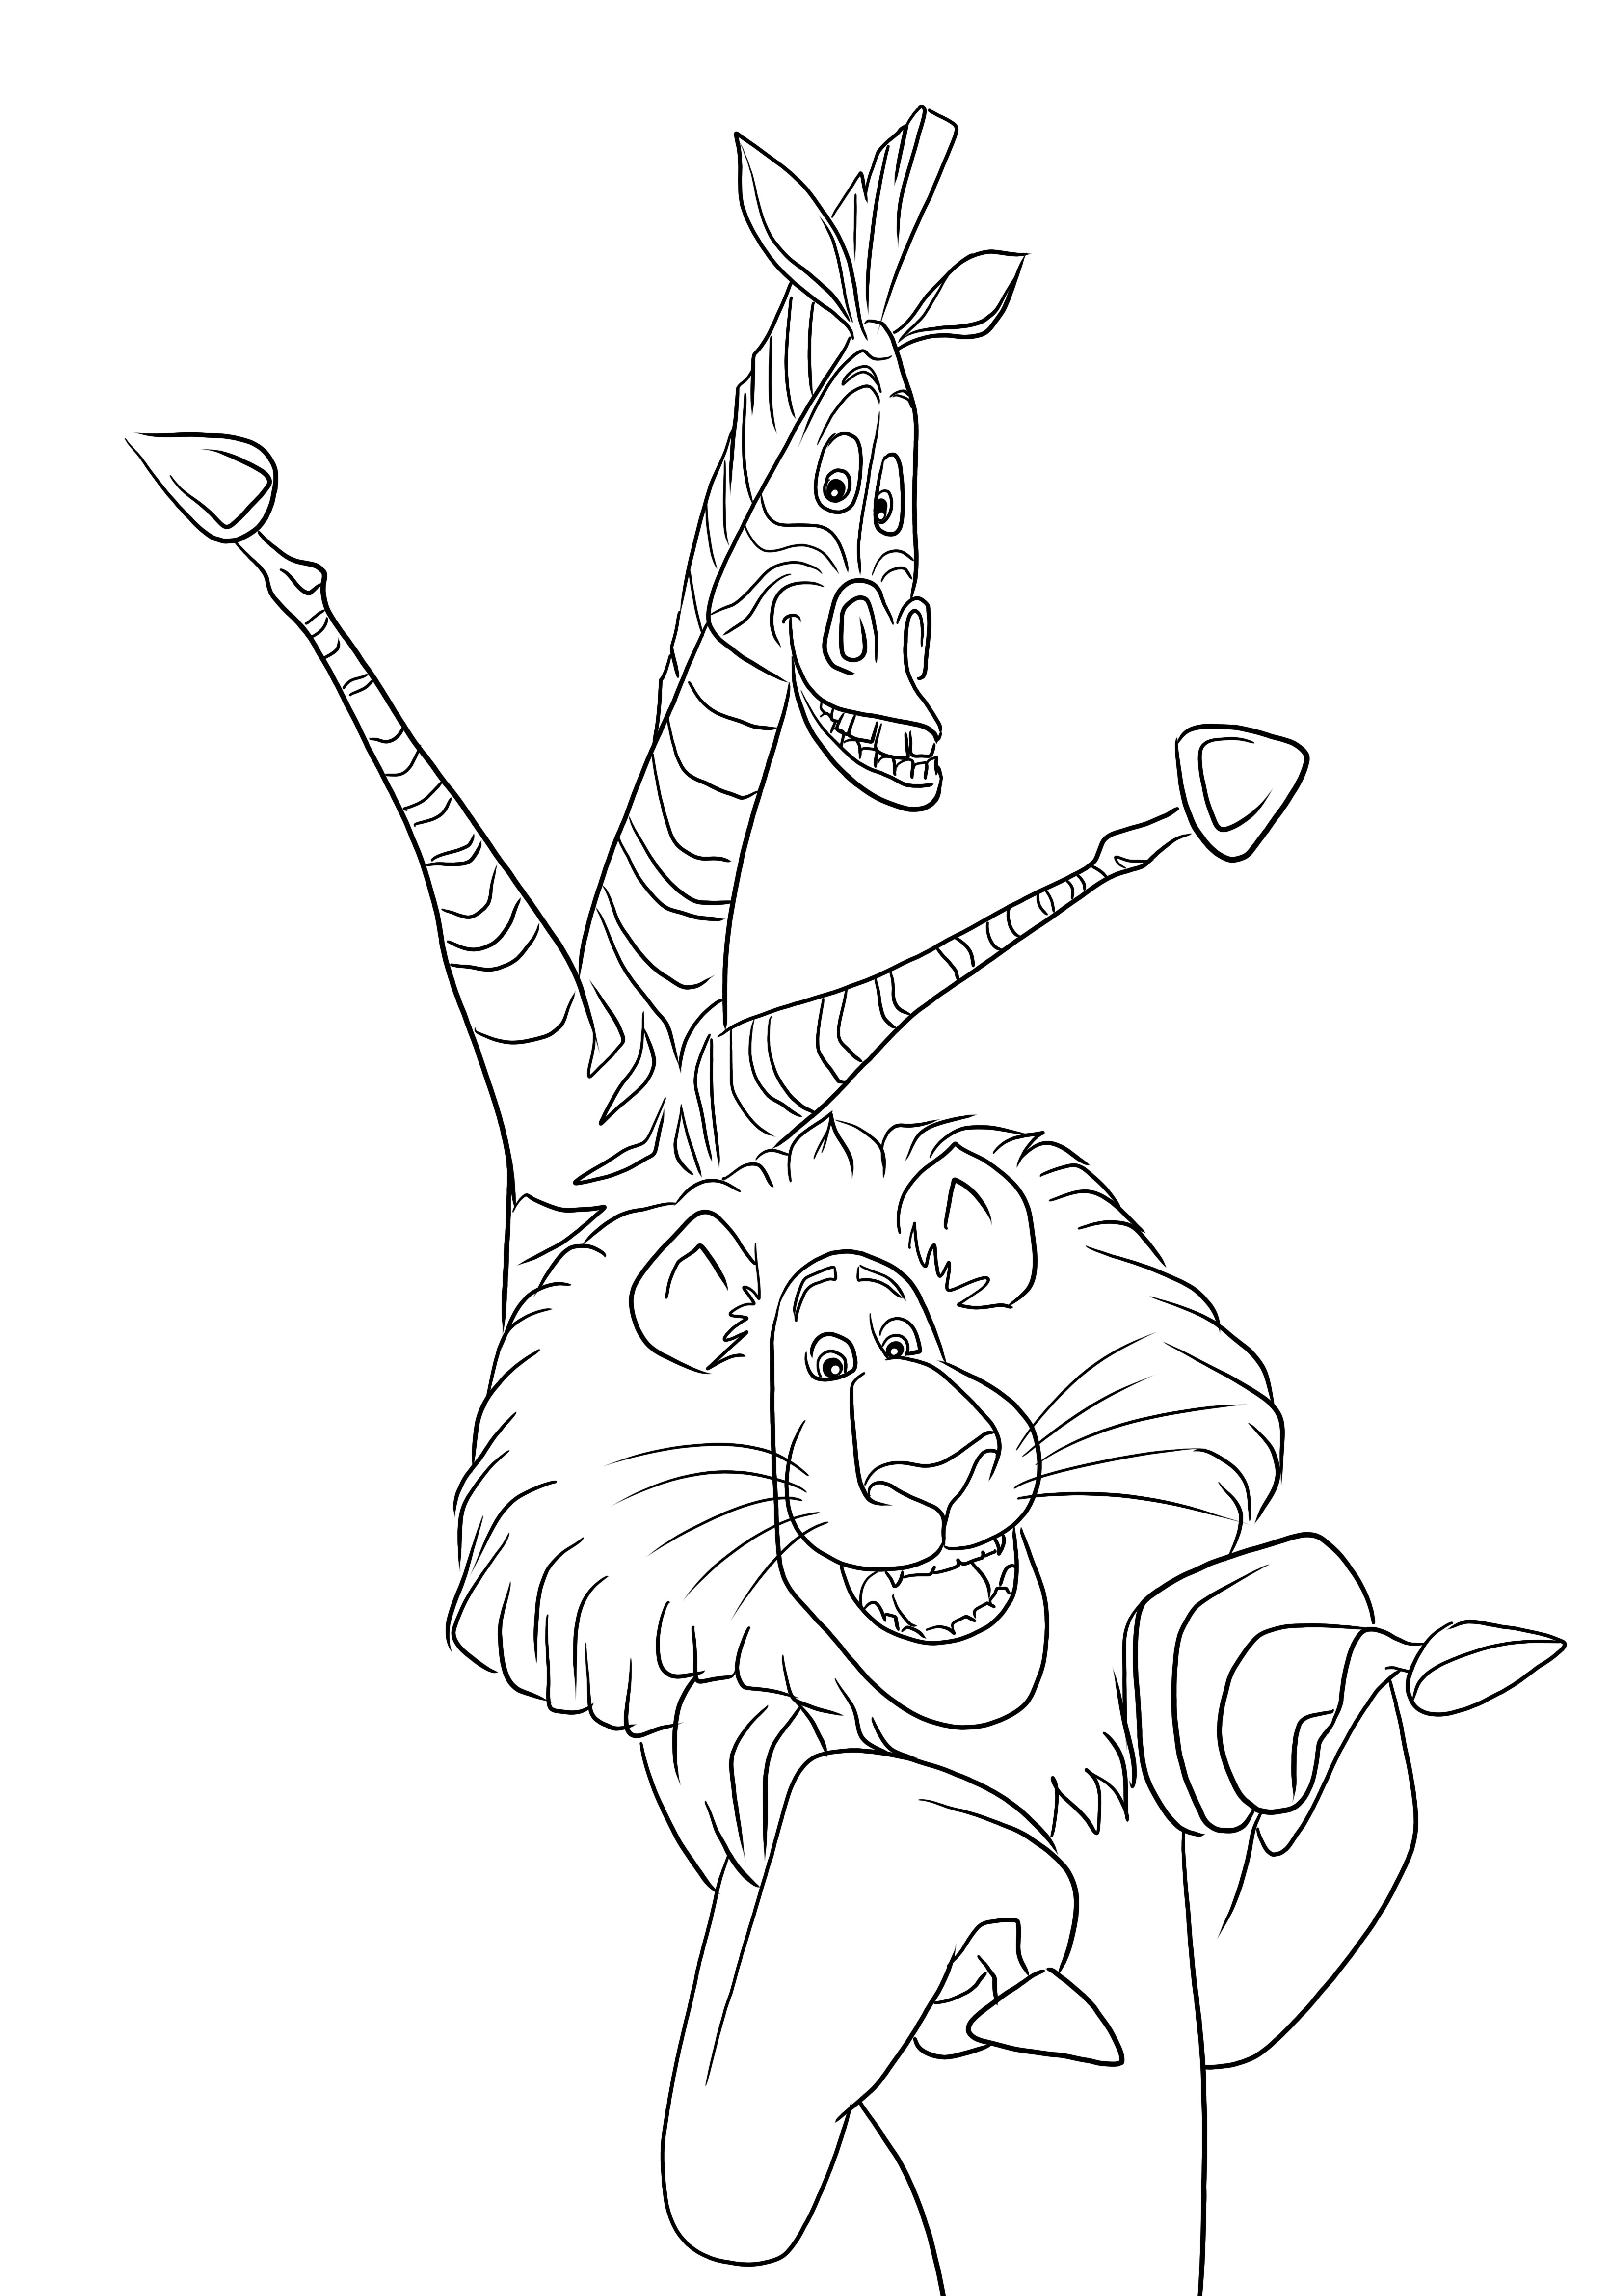 Semplice immagine da colorare di Melman e Alex il leone, da stampare o scaricare gratuitamente per i bambini